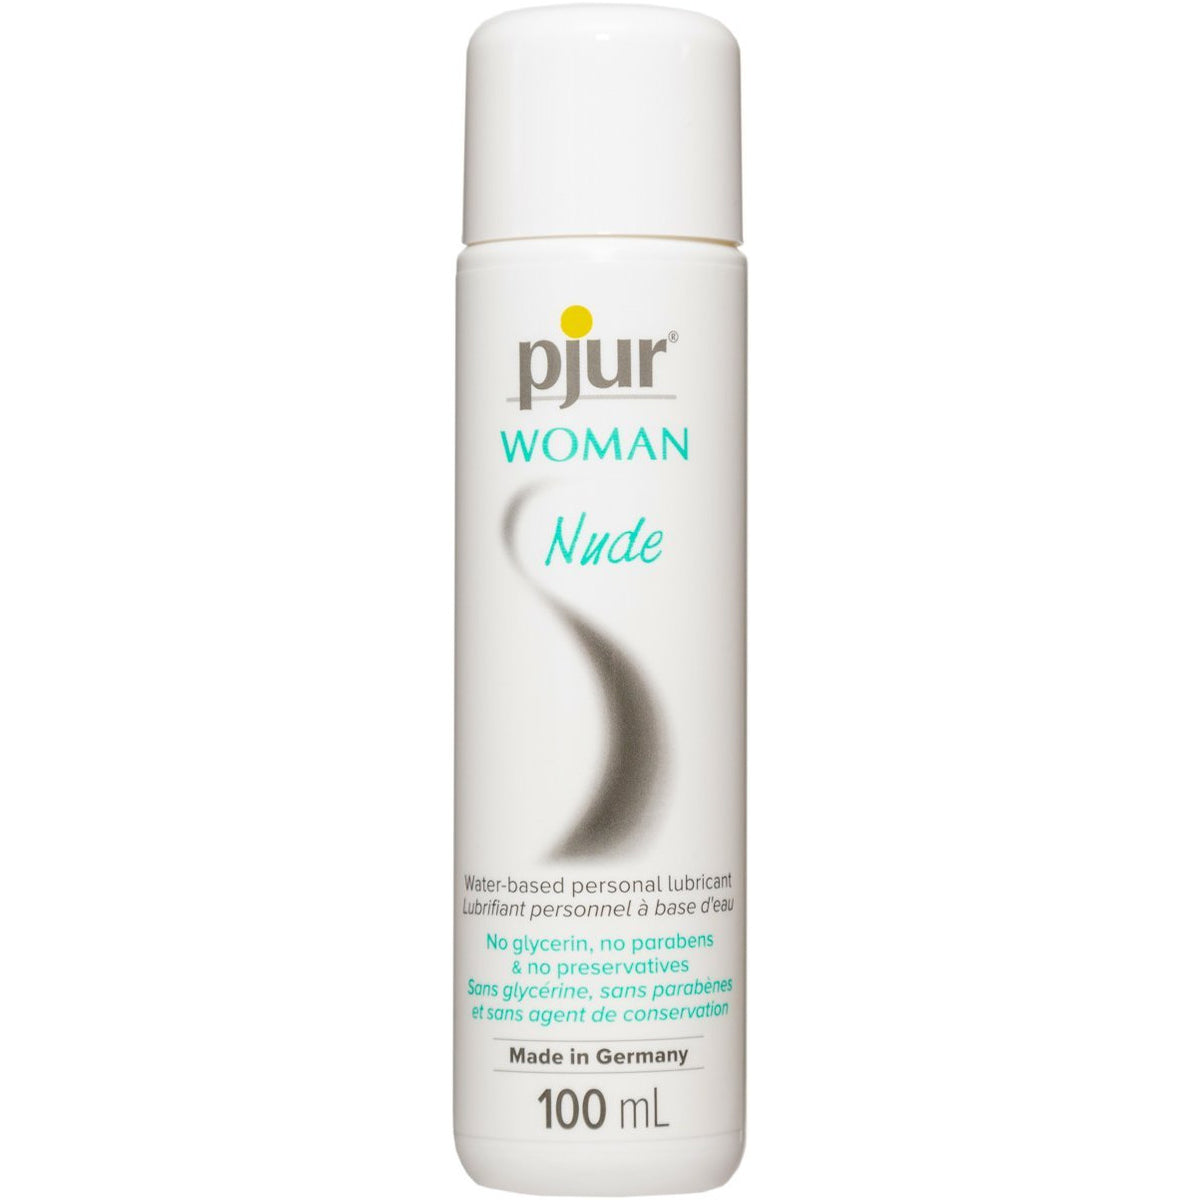 PJUR Woman - Nude - Water-Based Lubricant - 100 ml